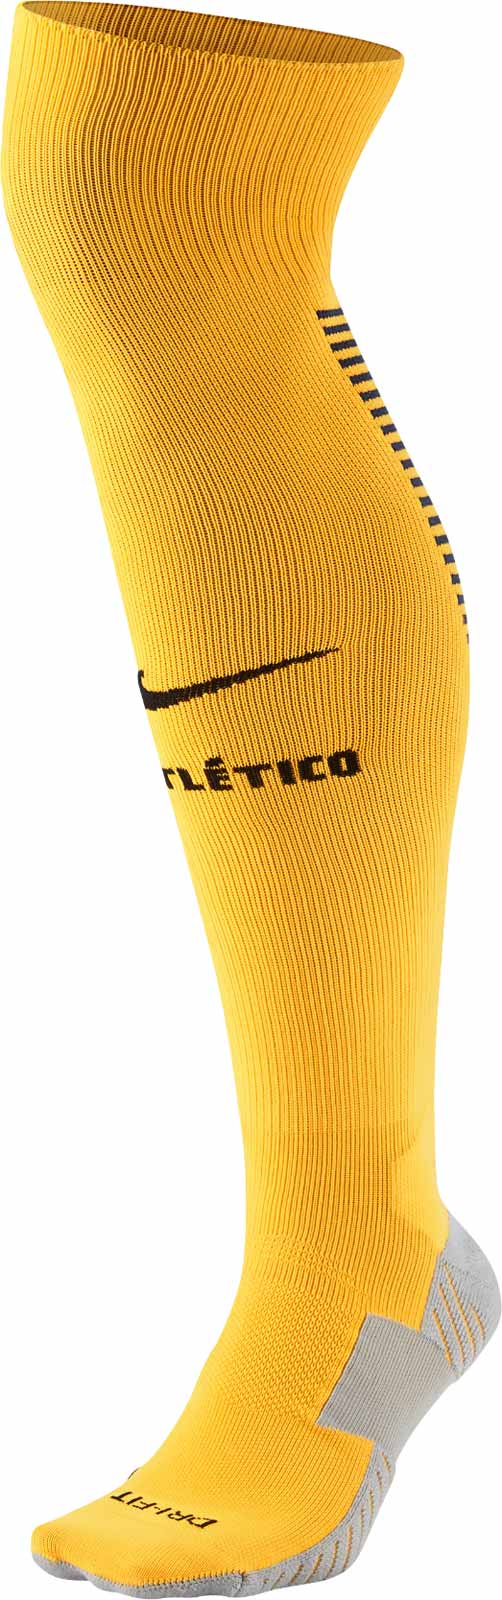 atletico-16-17-away-kit-socks